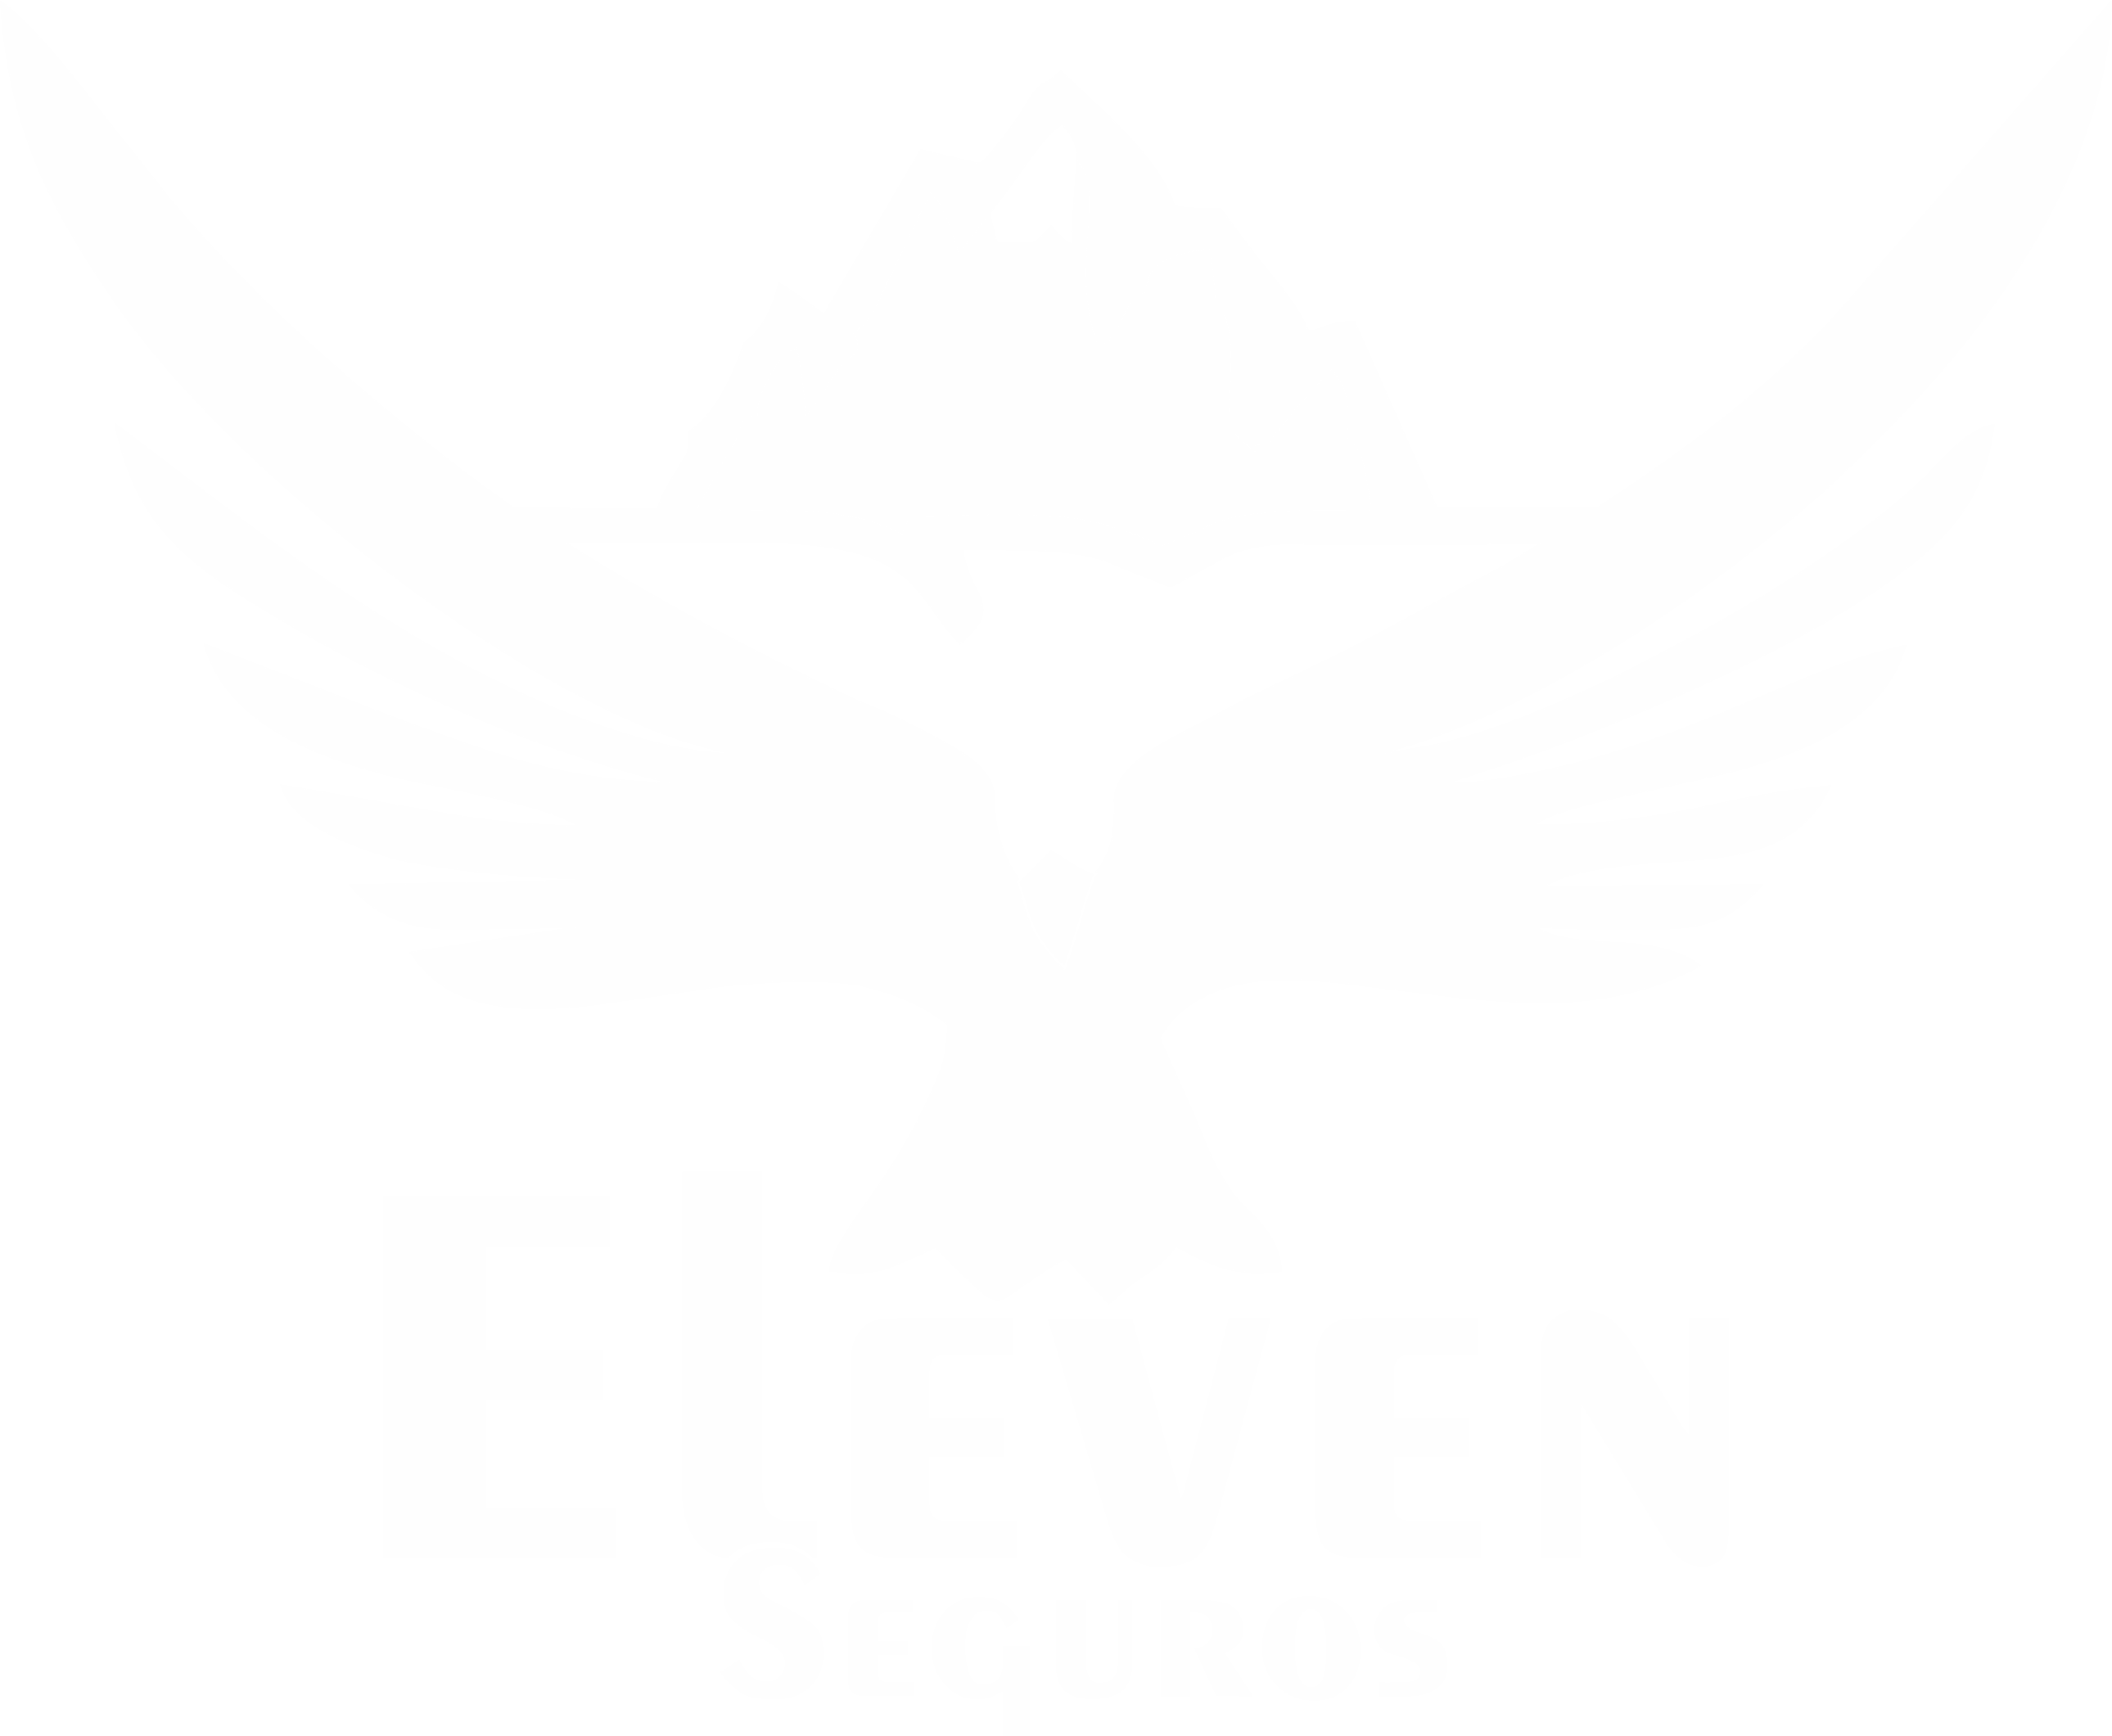 Eleven Seguros